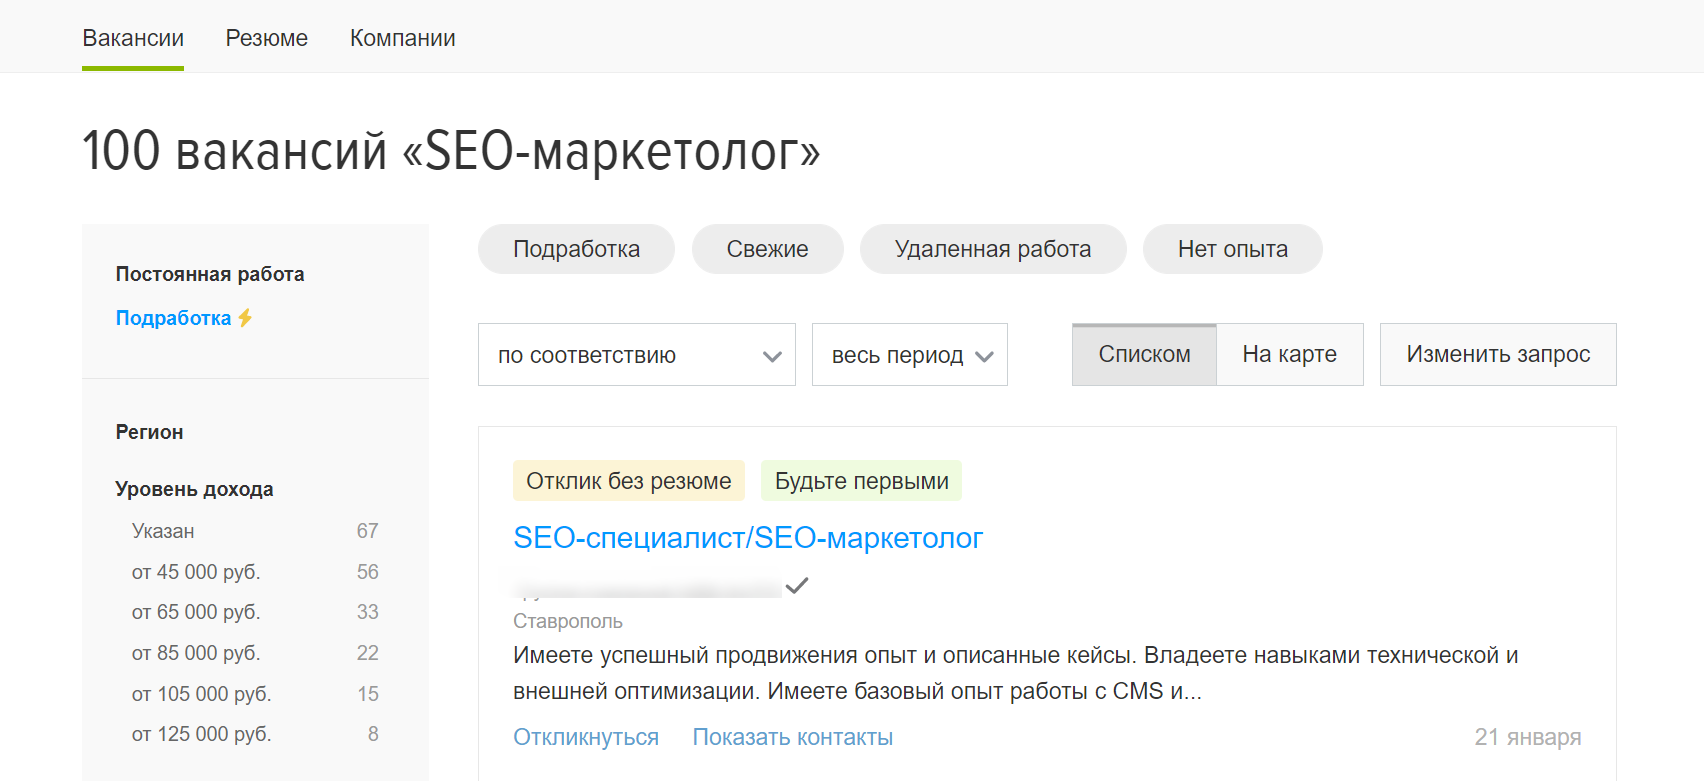 Вакансии SEO-маркетолог на сайте HH.ru